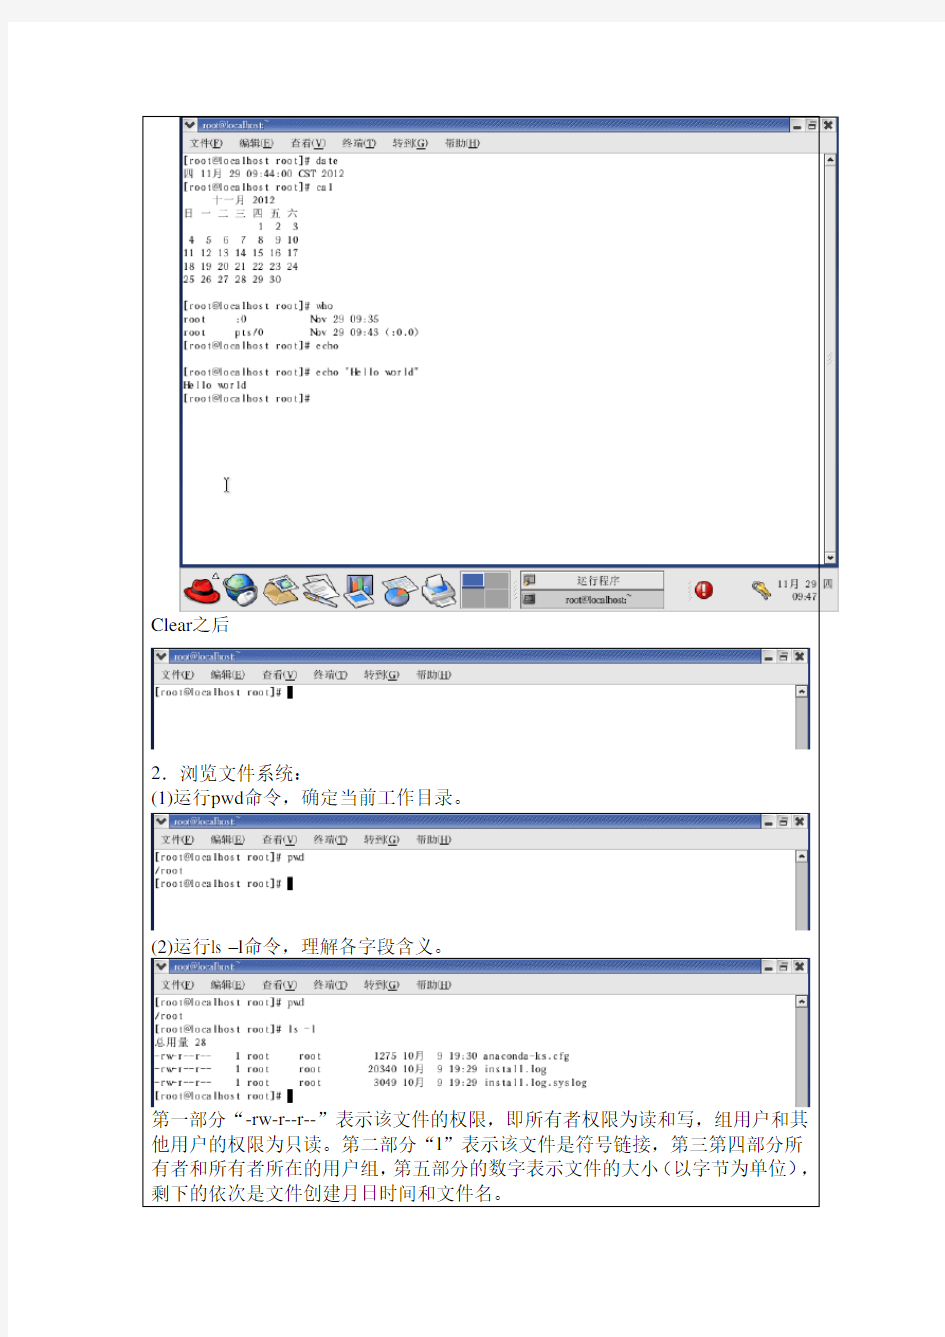 操作系统实验报告-Linux基本命令使用和vi编辑器